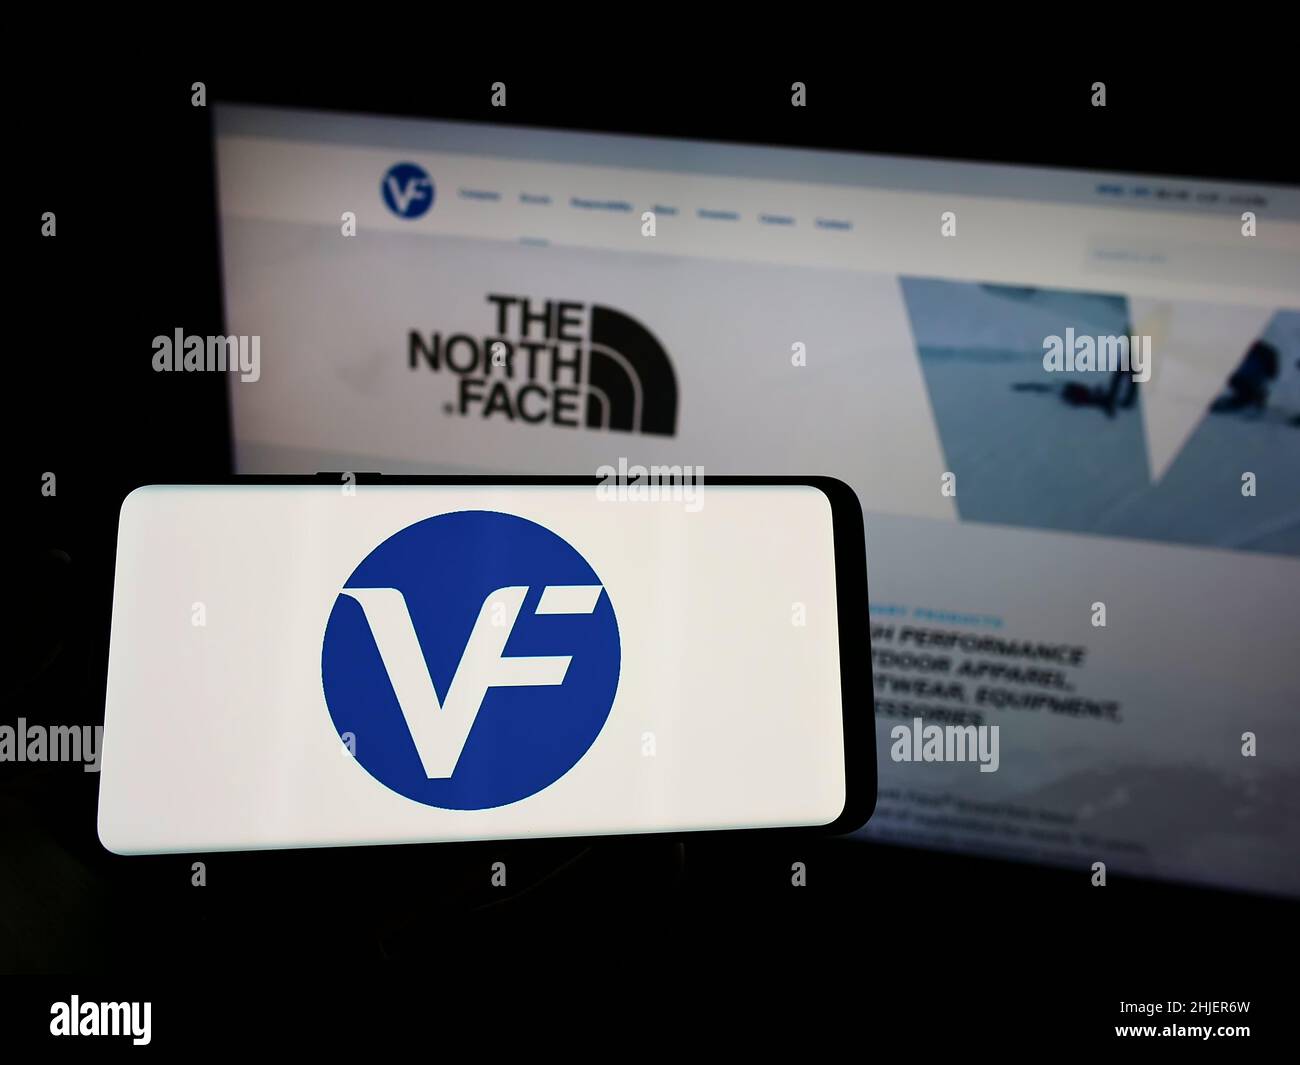 Persona che tiene il cellulare con il logo della società americana di abbigliamento VF Corporation sullo schermo di fronte al sito web aziendale. Mettere a fuoco sul display del telefono. Foto Stock